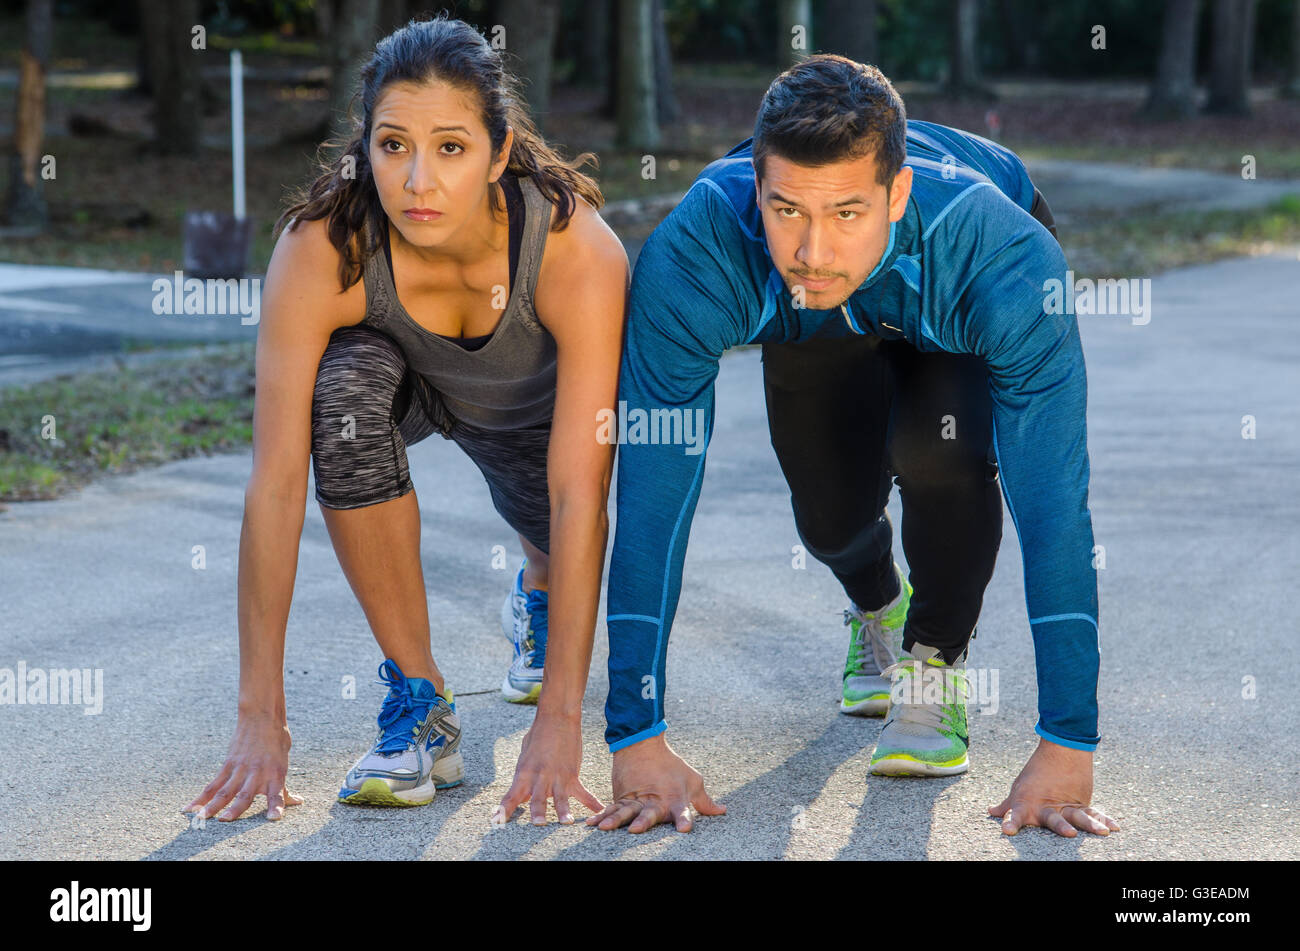 ethnic Hispanic male and female athletes running track Stock Photo